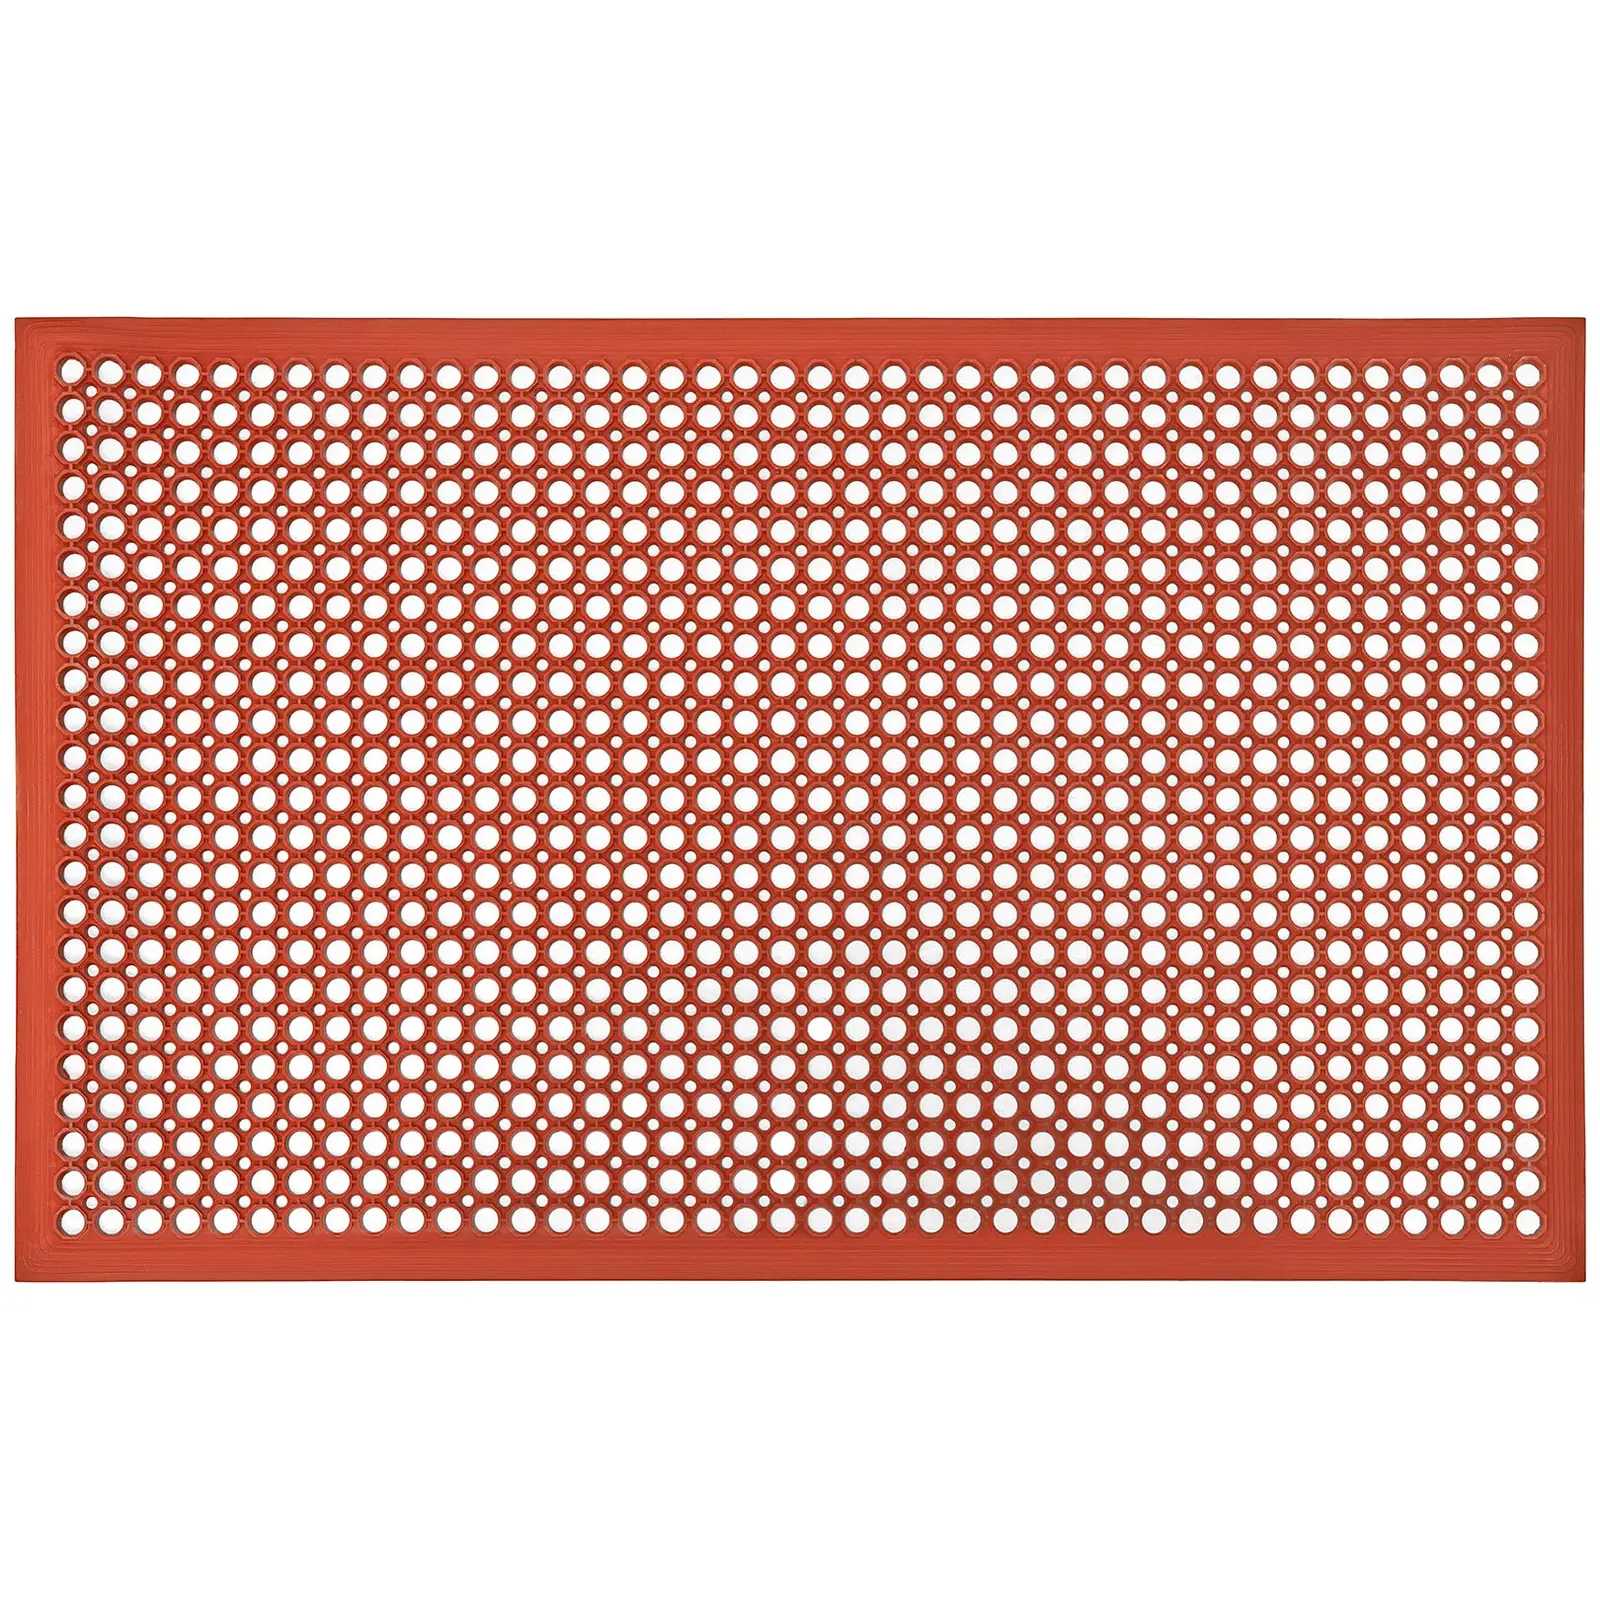 Tapete de borracha - 153 x 92 x 1 cm - vermelho